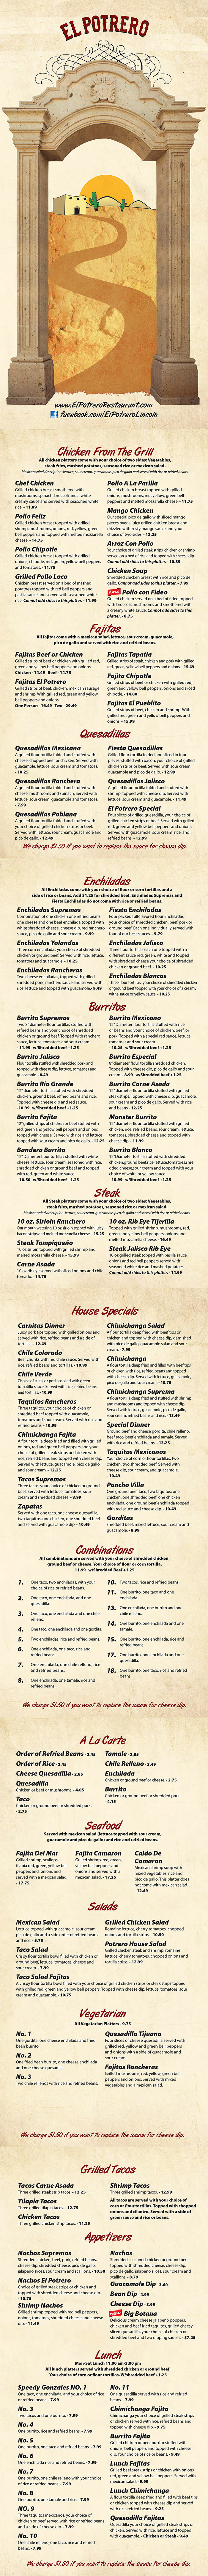 El Potrero Mexican Restaurant Menu Page 1